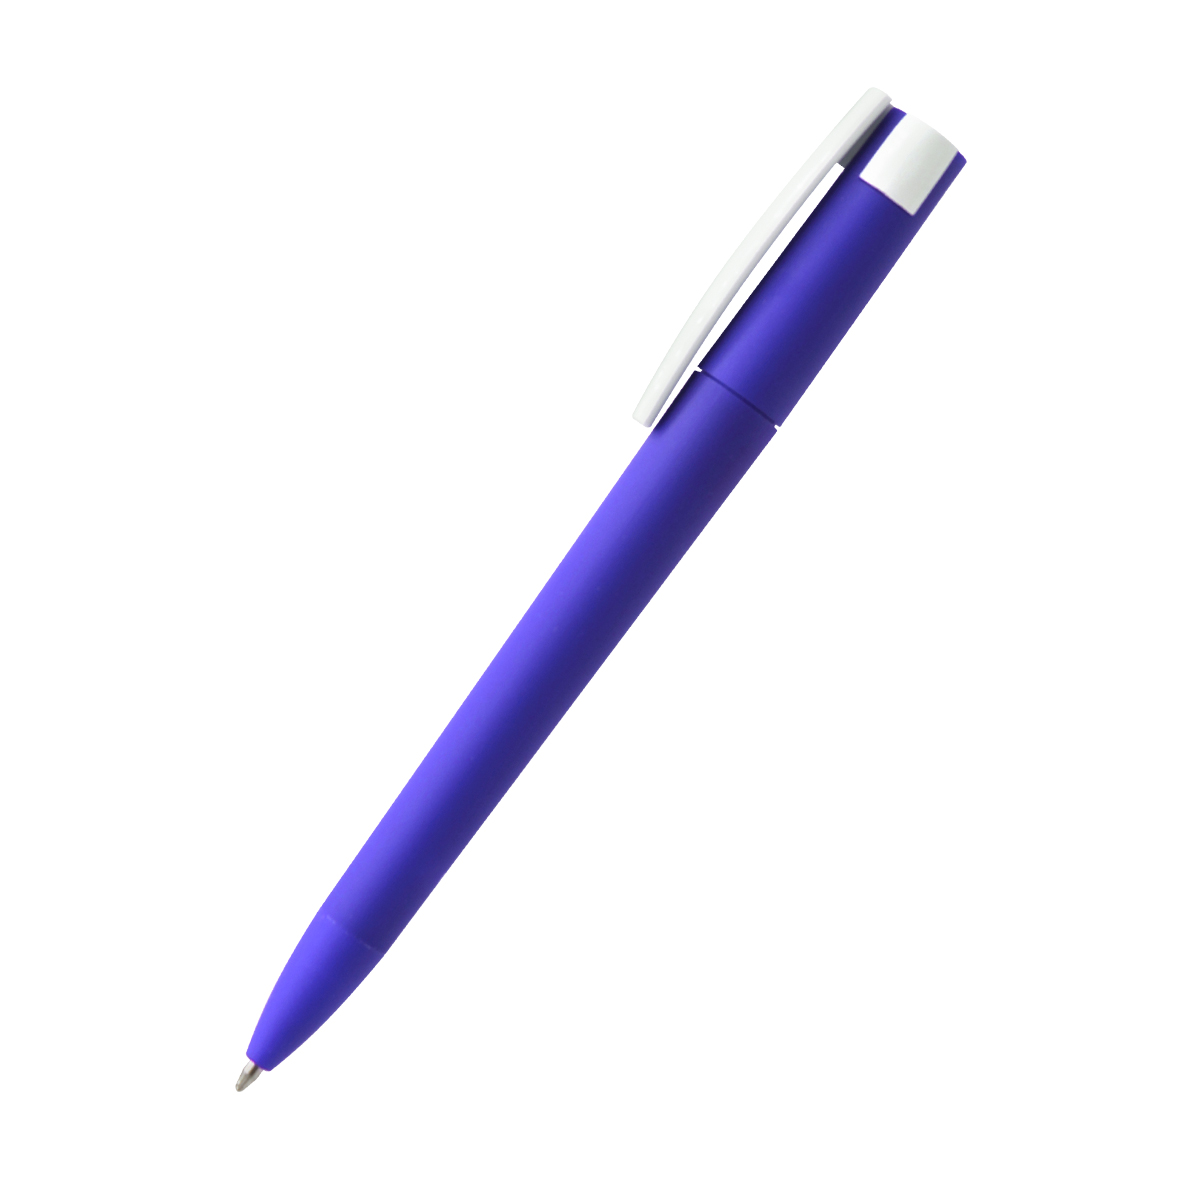 Ручка пластиковая T-pen софт-тач